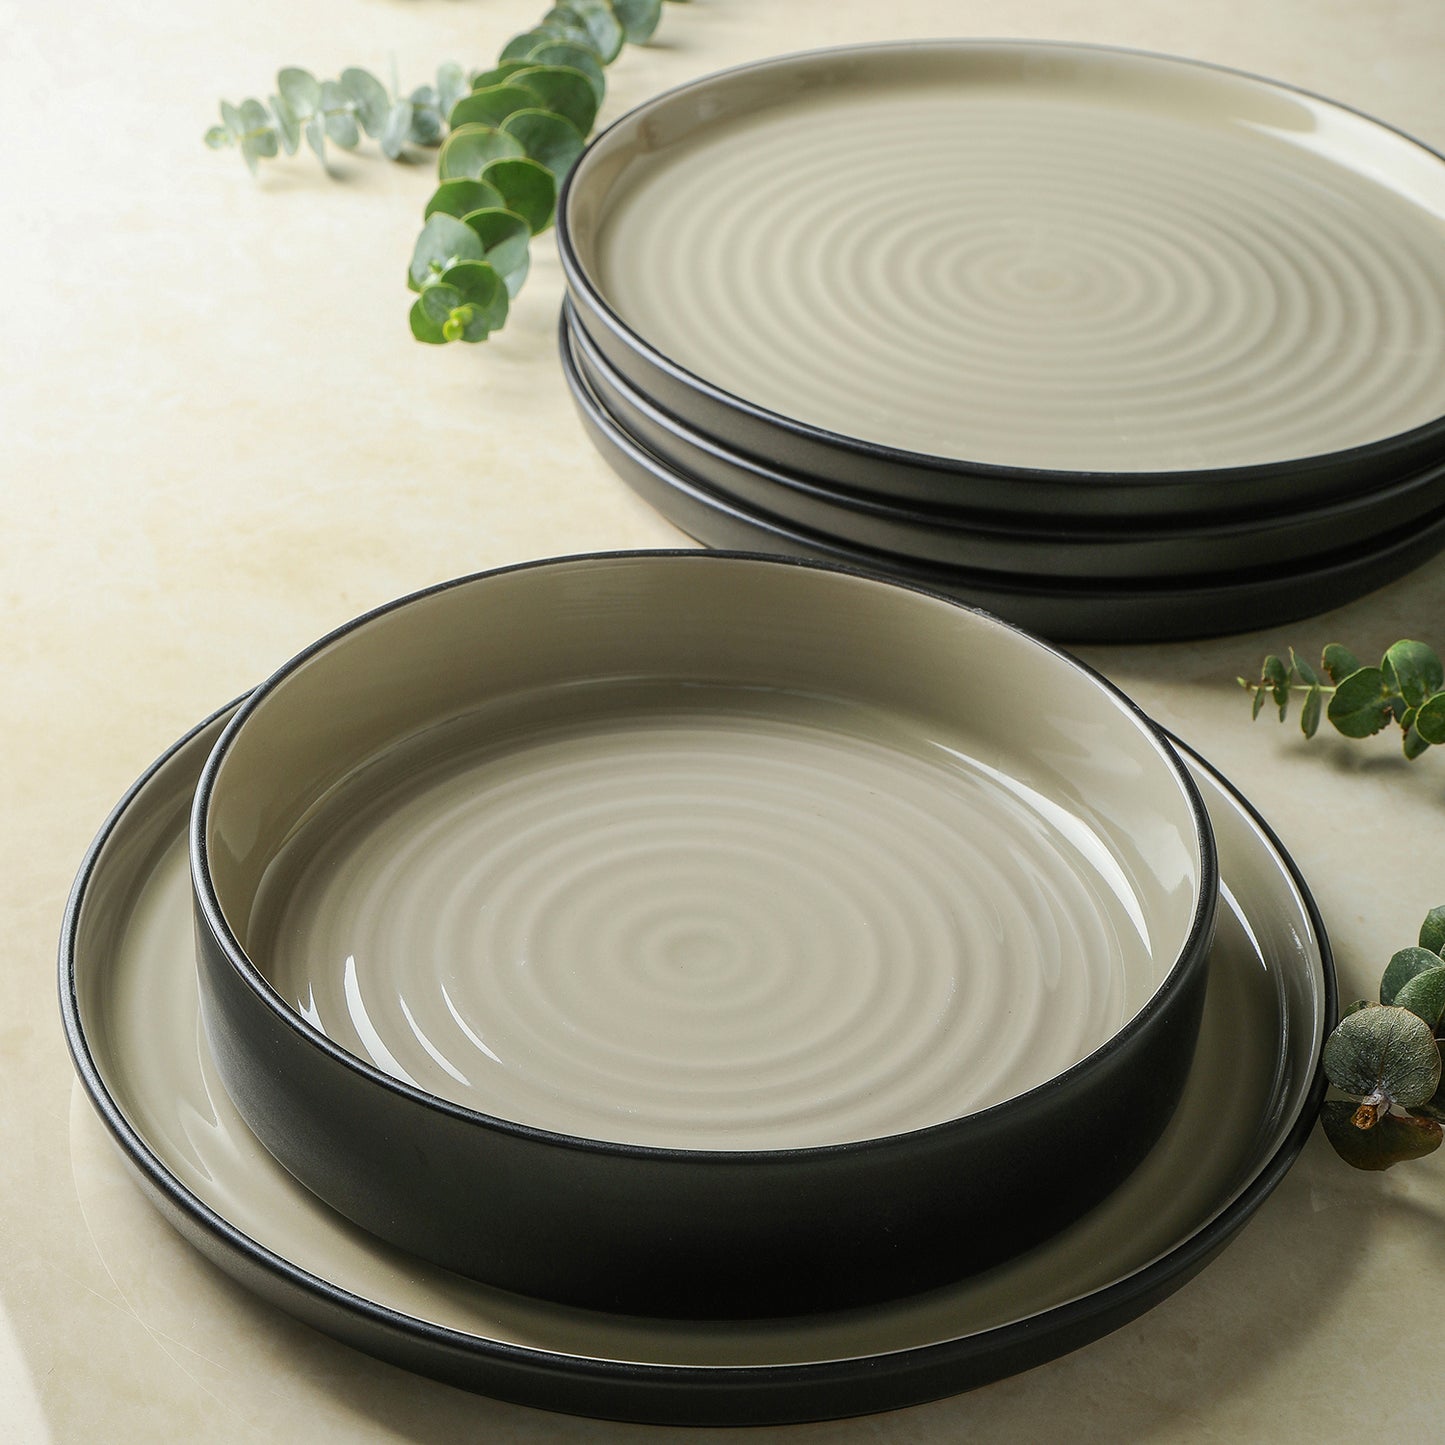 Elica Stoneware Dinnerware Set - Beige And Black